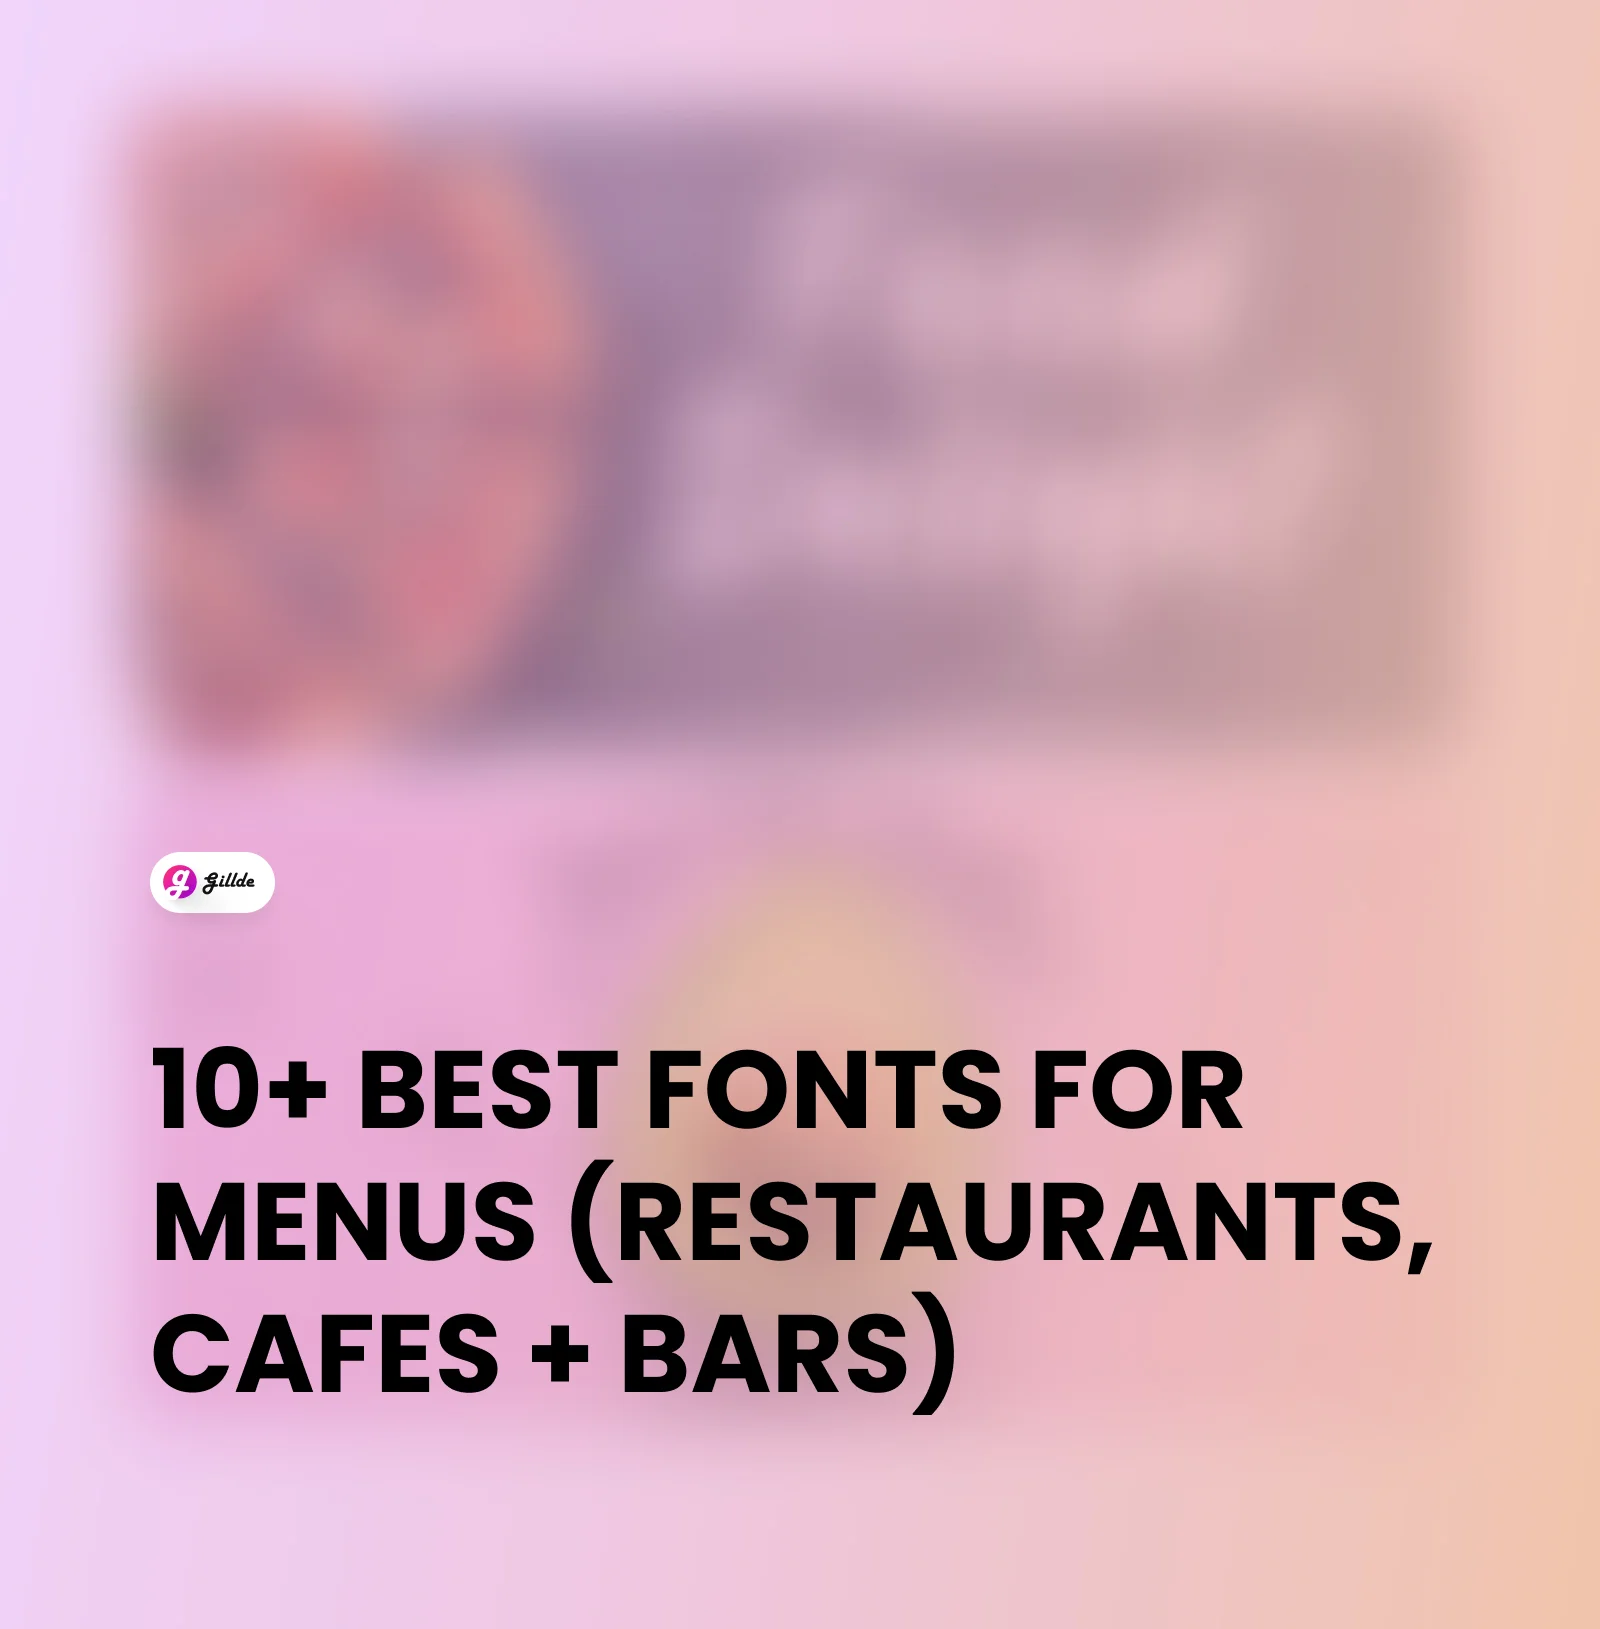 Fonts for Menus